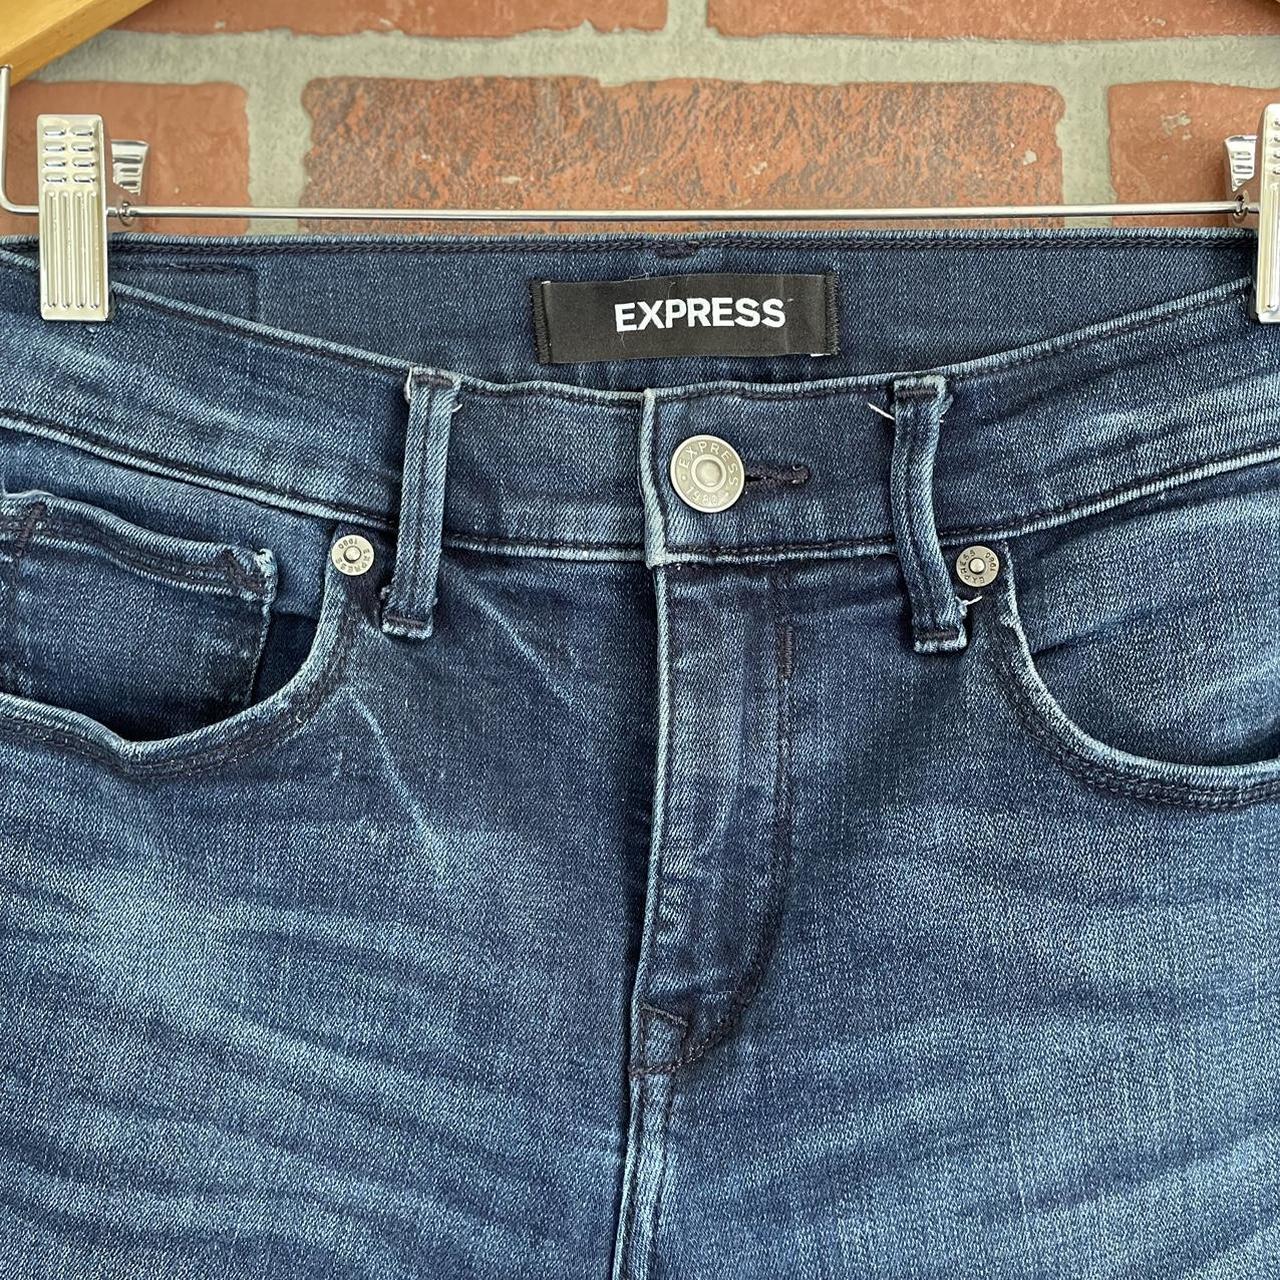 Express skinny jeans Super soft, stretchy denim Size... - Depop